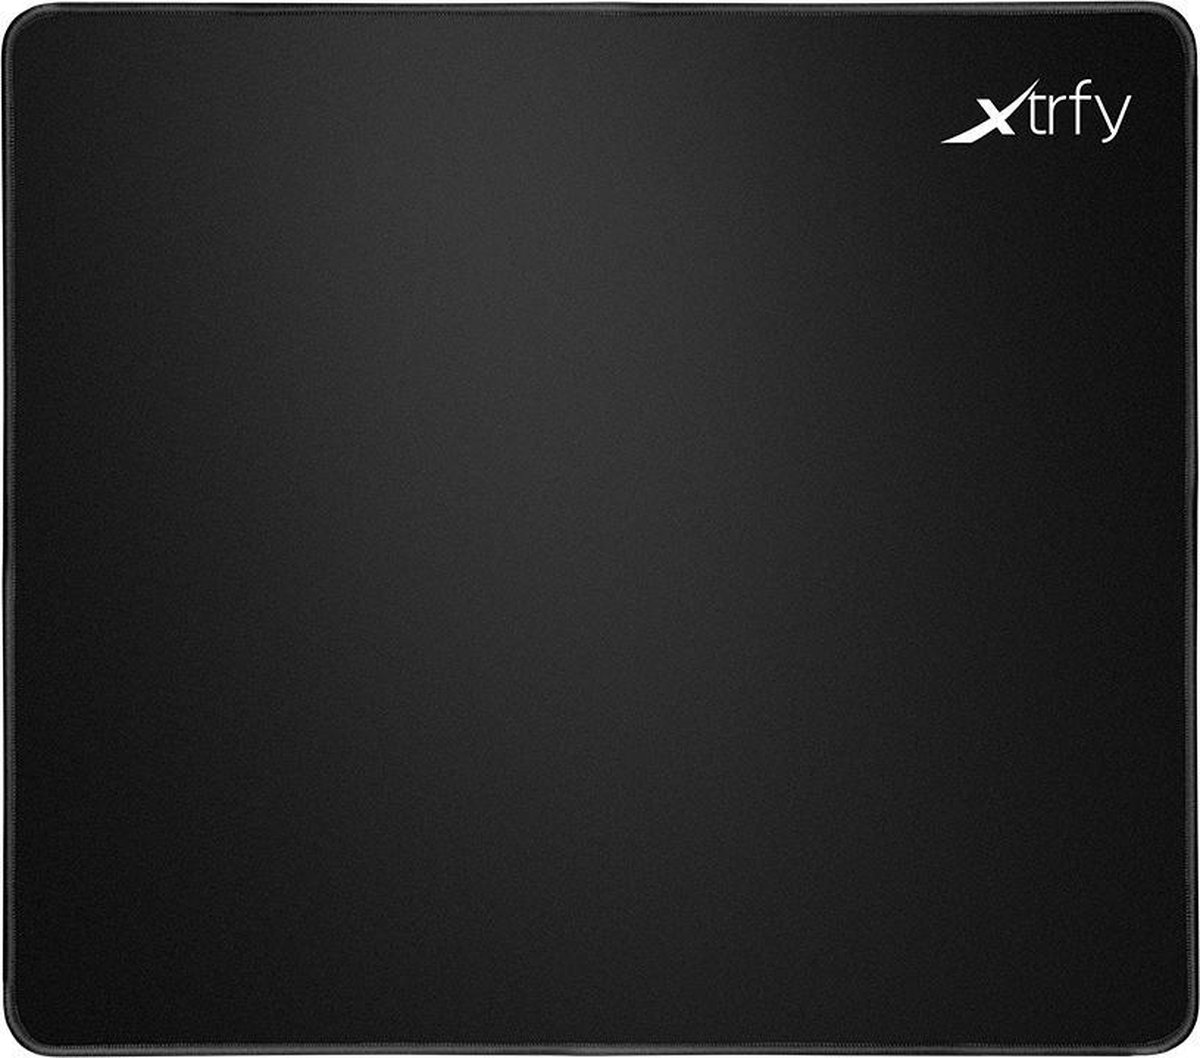 Xtrfy XG-GP2-L muismat Game-muismat - Zwart